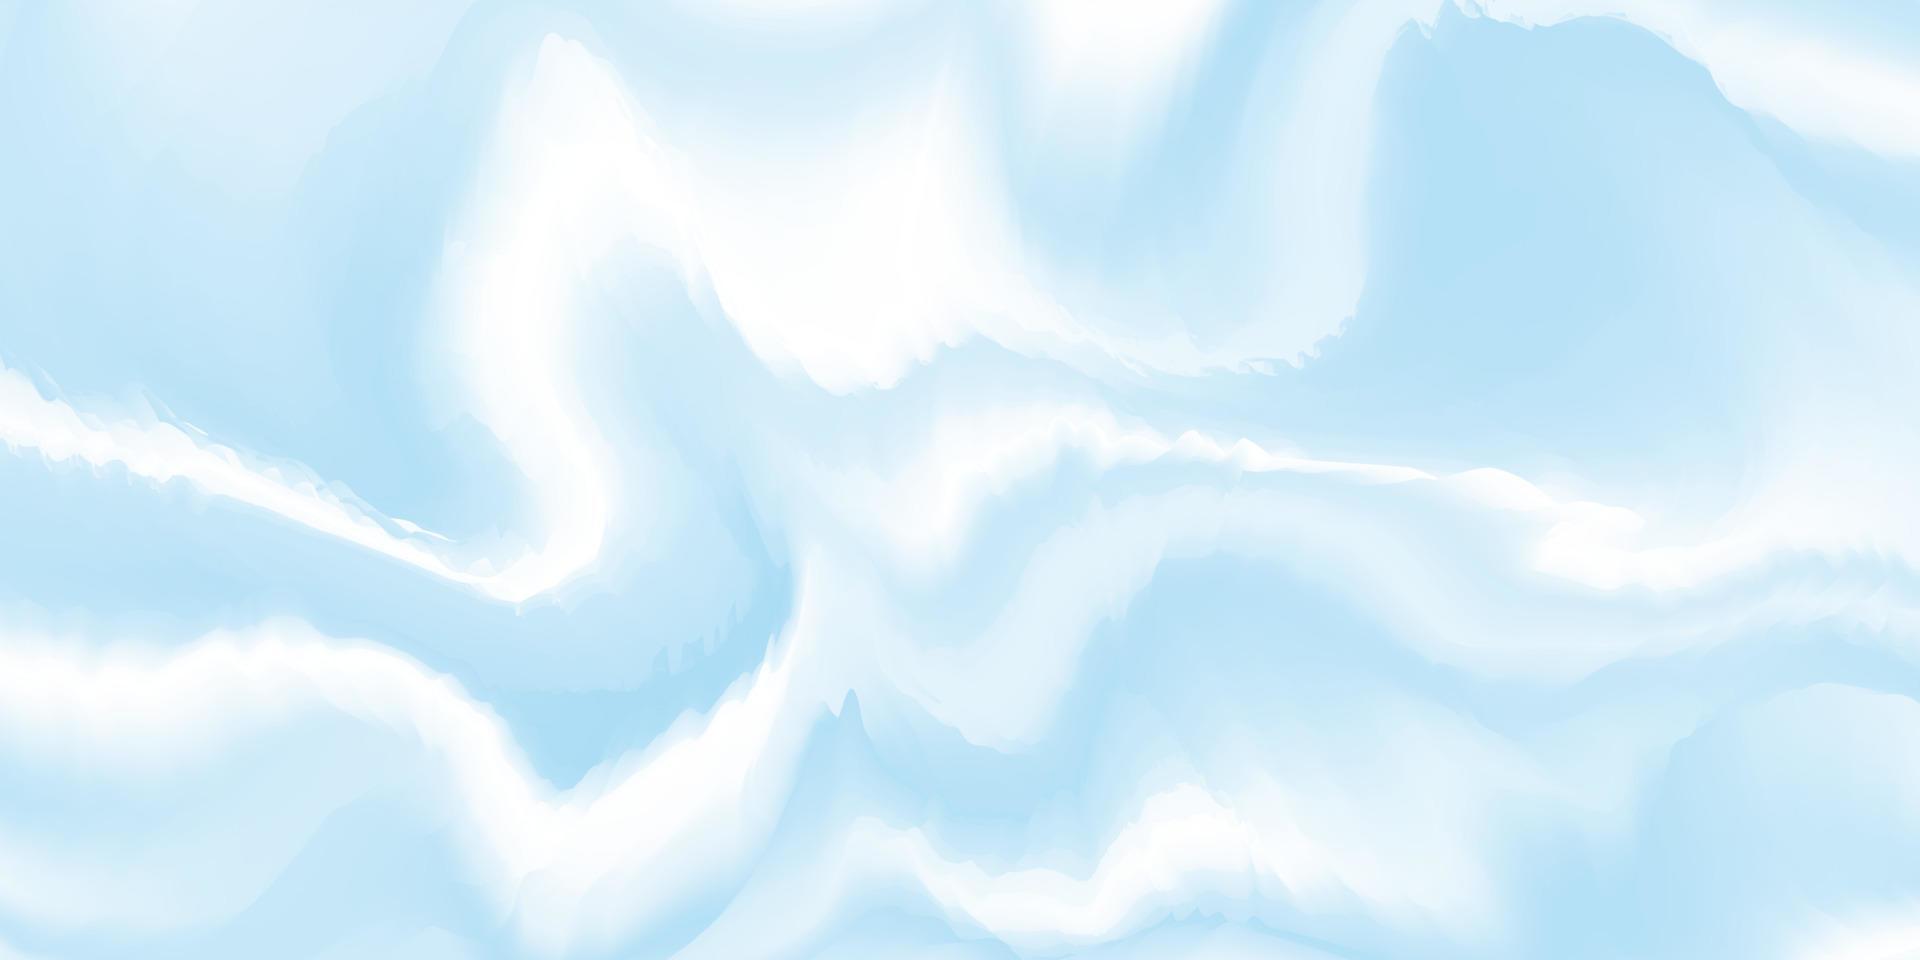 abstract blauw achtergrond met golven. blauw en wit golvend textuur. vloeistof marmeren oppervlak. vector illustratie.